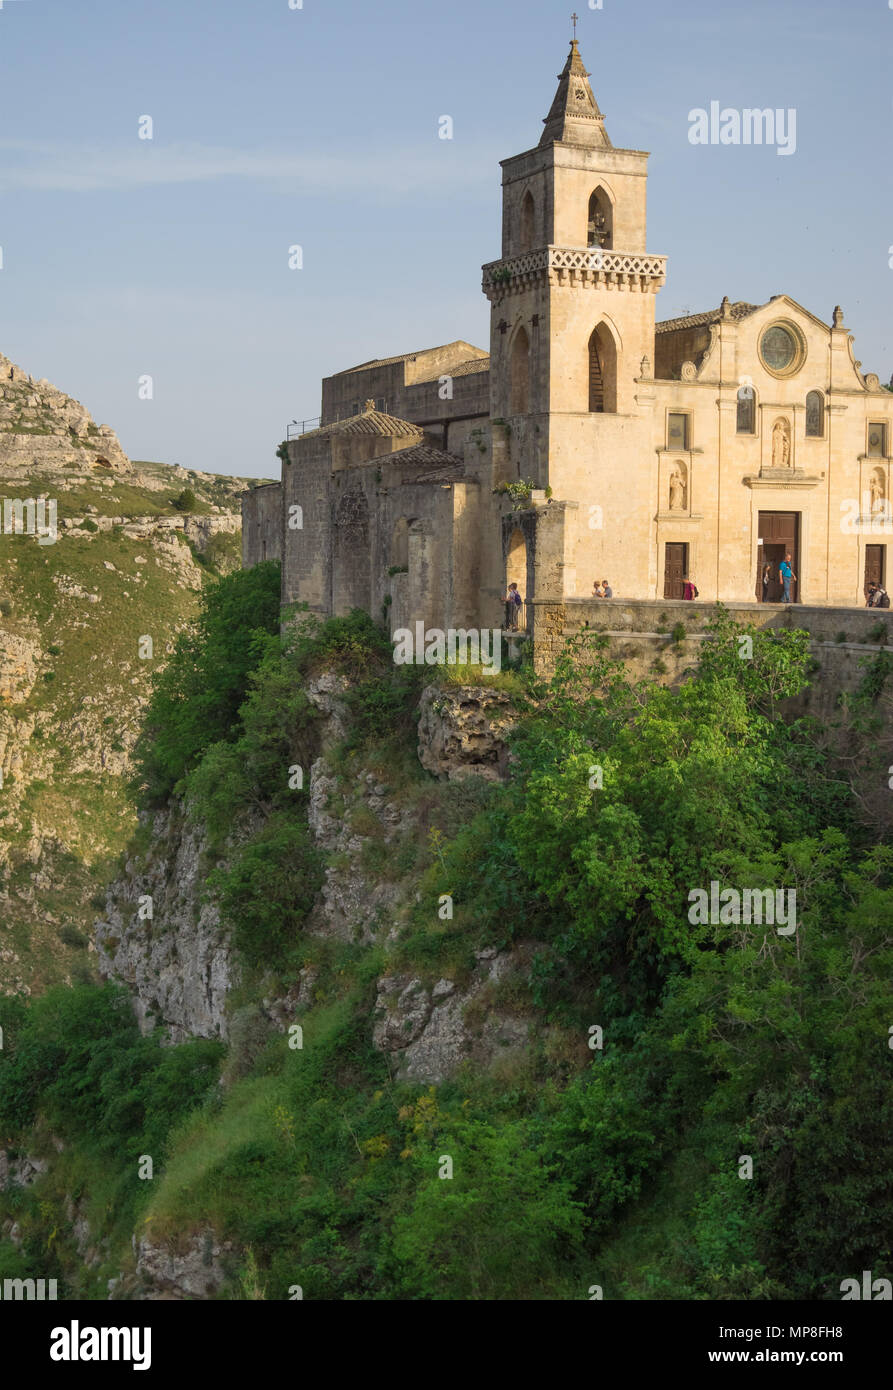 Matera (Basilicate) - Le centre historique de la merveilleuse ville de pierre du sud de l'Italie, une attraction touristique pour le fameux 'Sassi' vieille ville. Banque D'Images